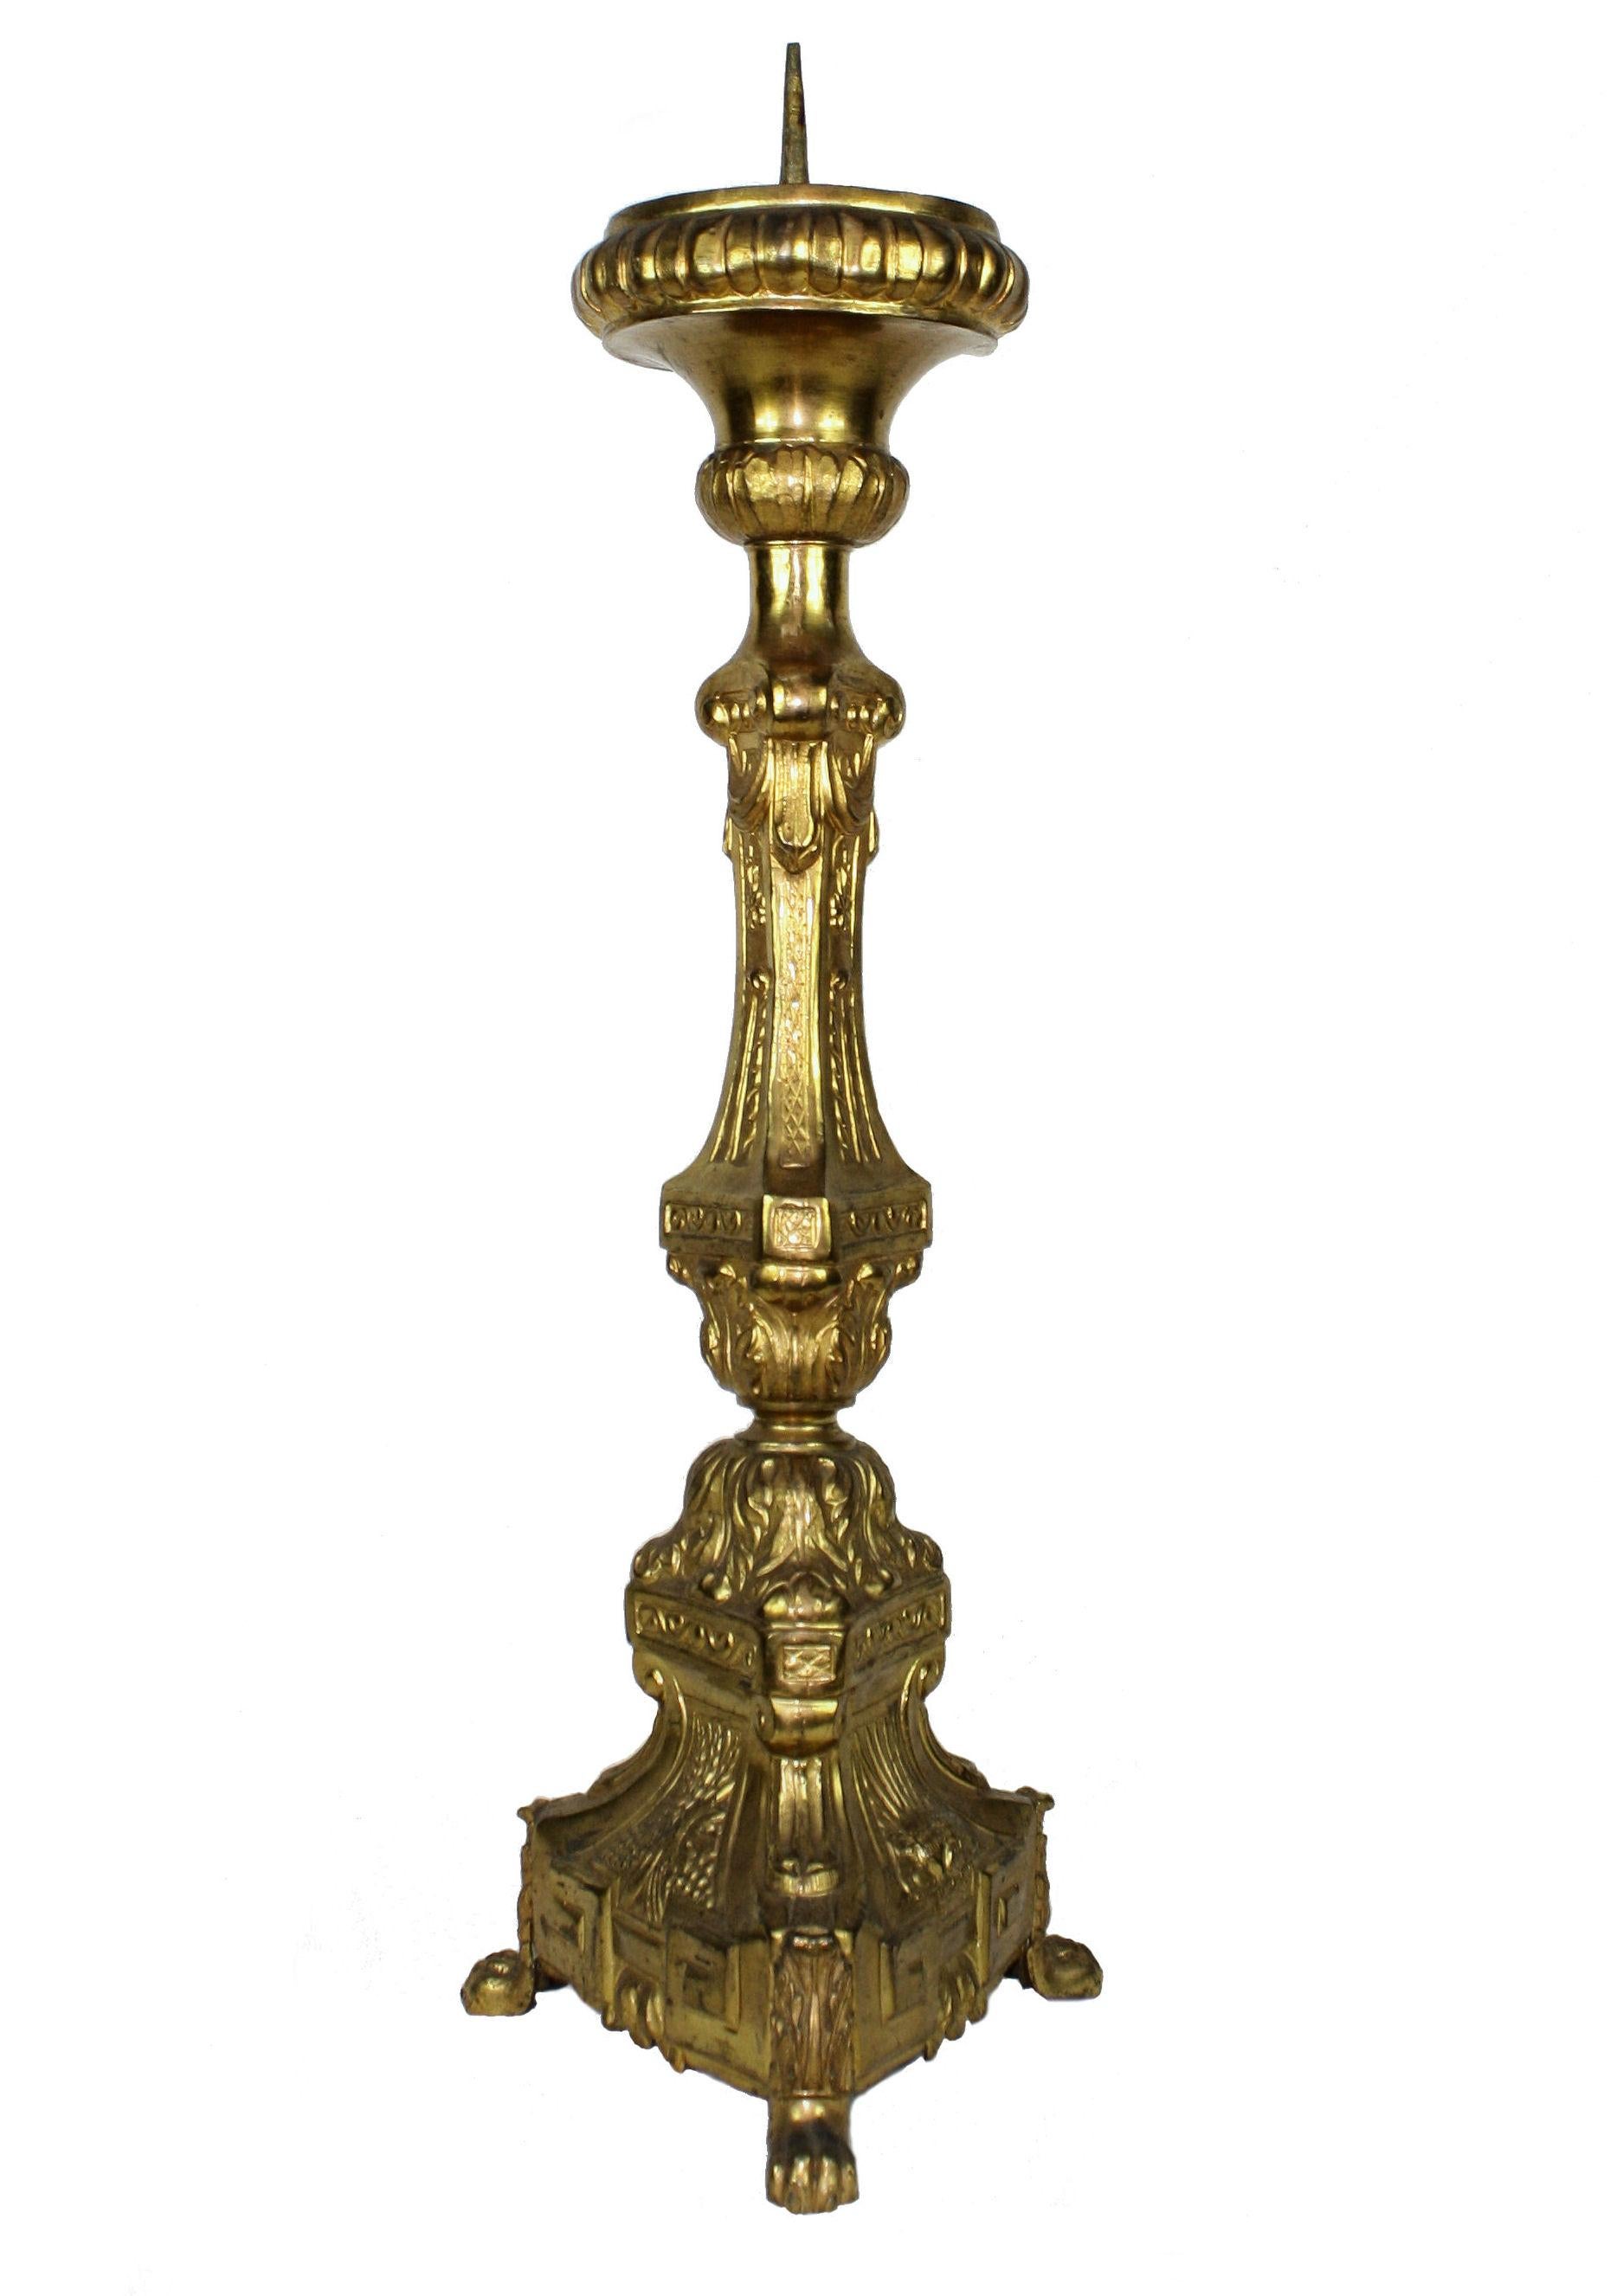 French Gold-Plated Metal Altarstick, circa 1860s (Französisch)